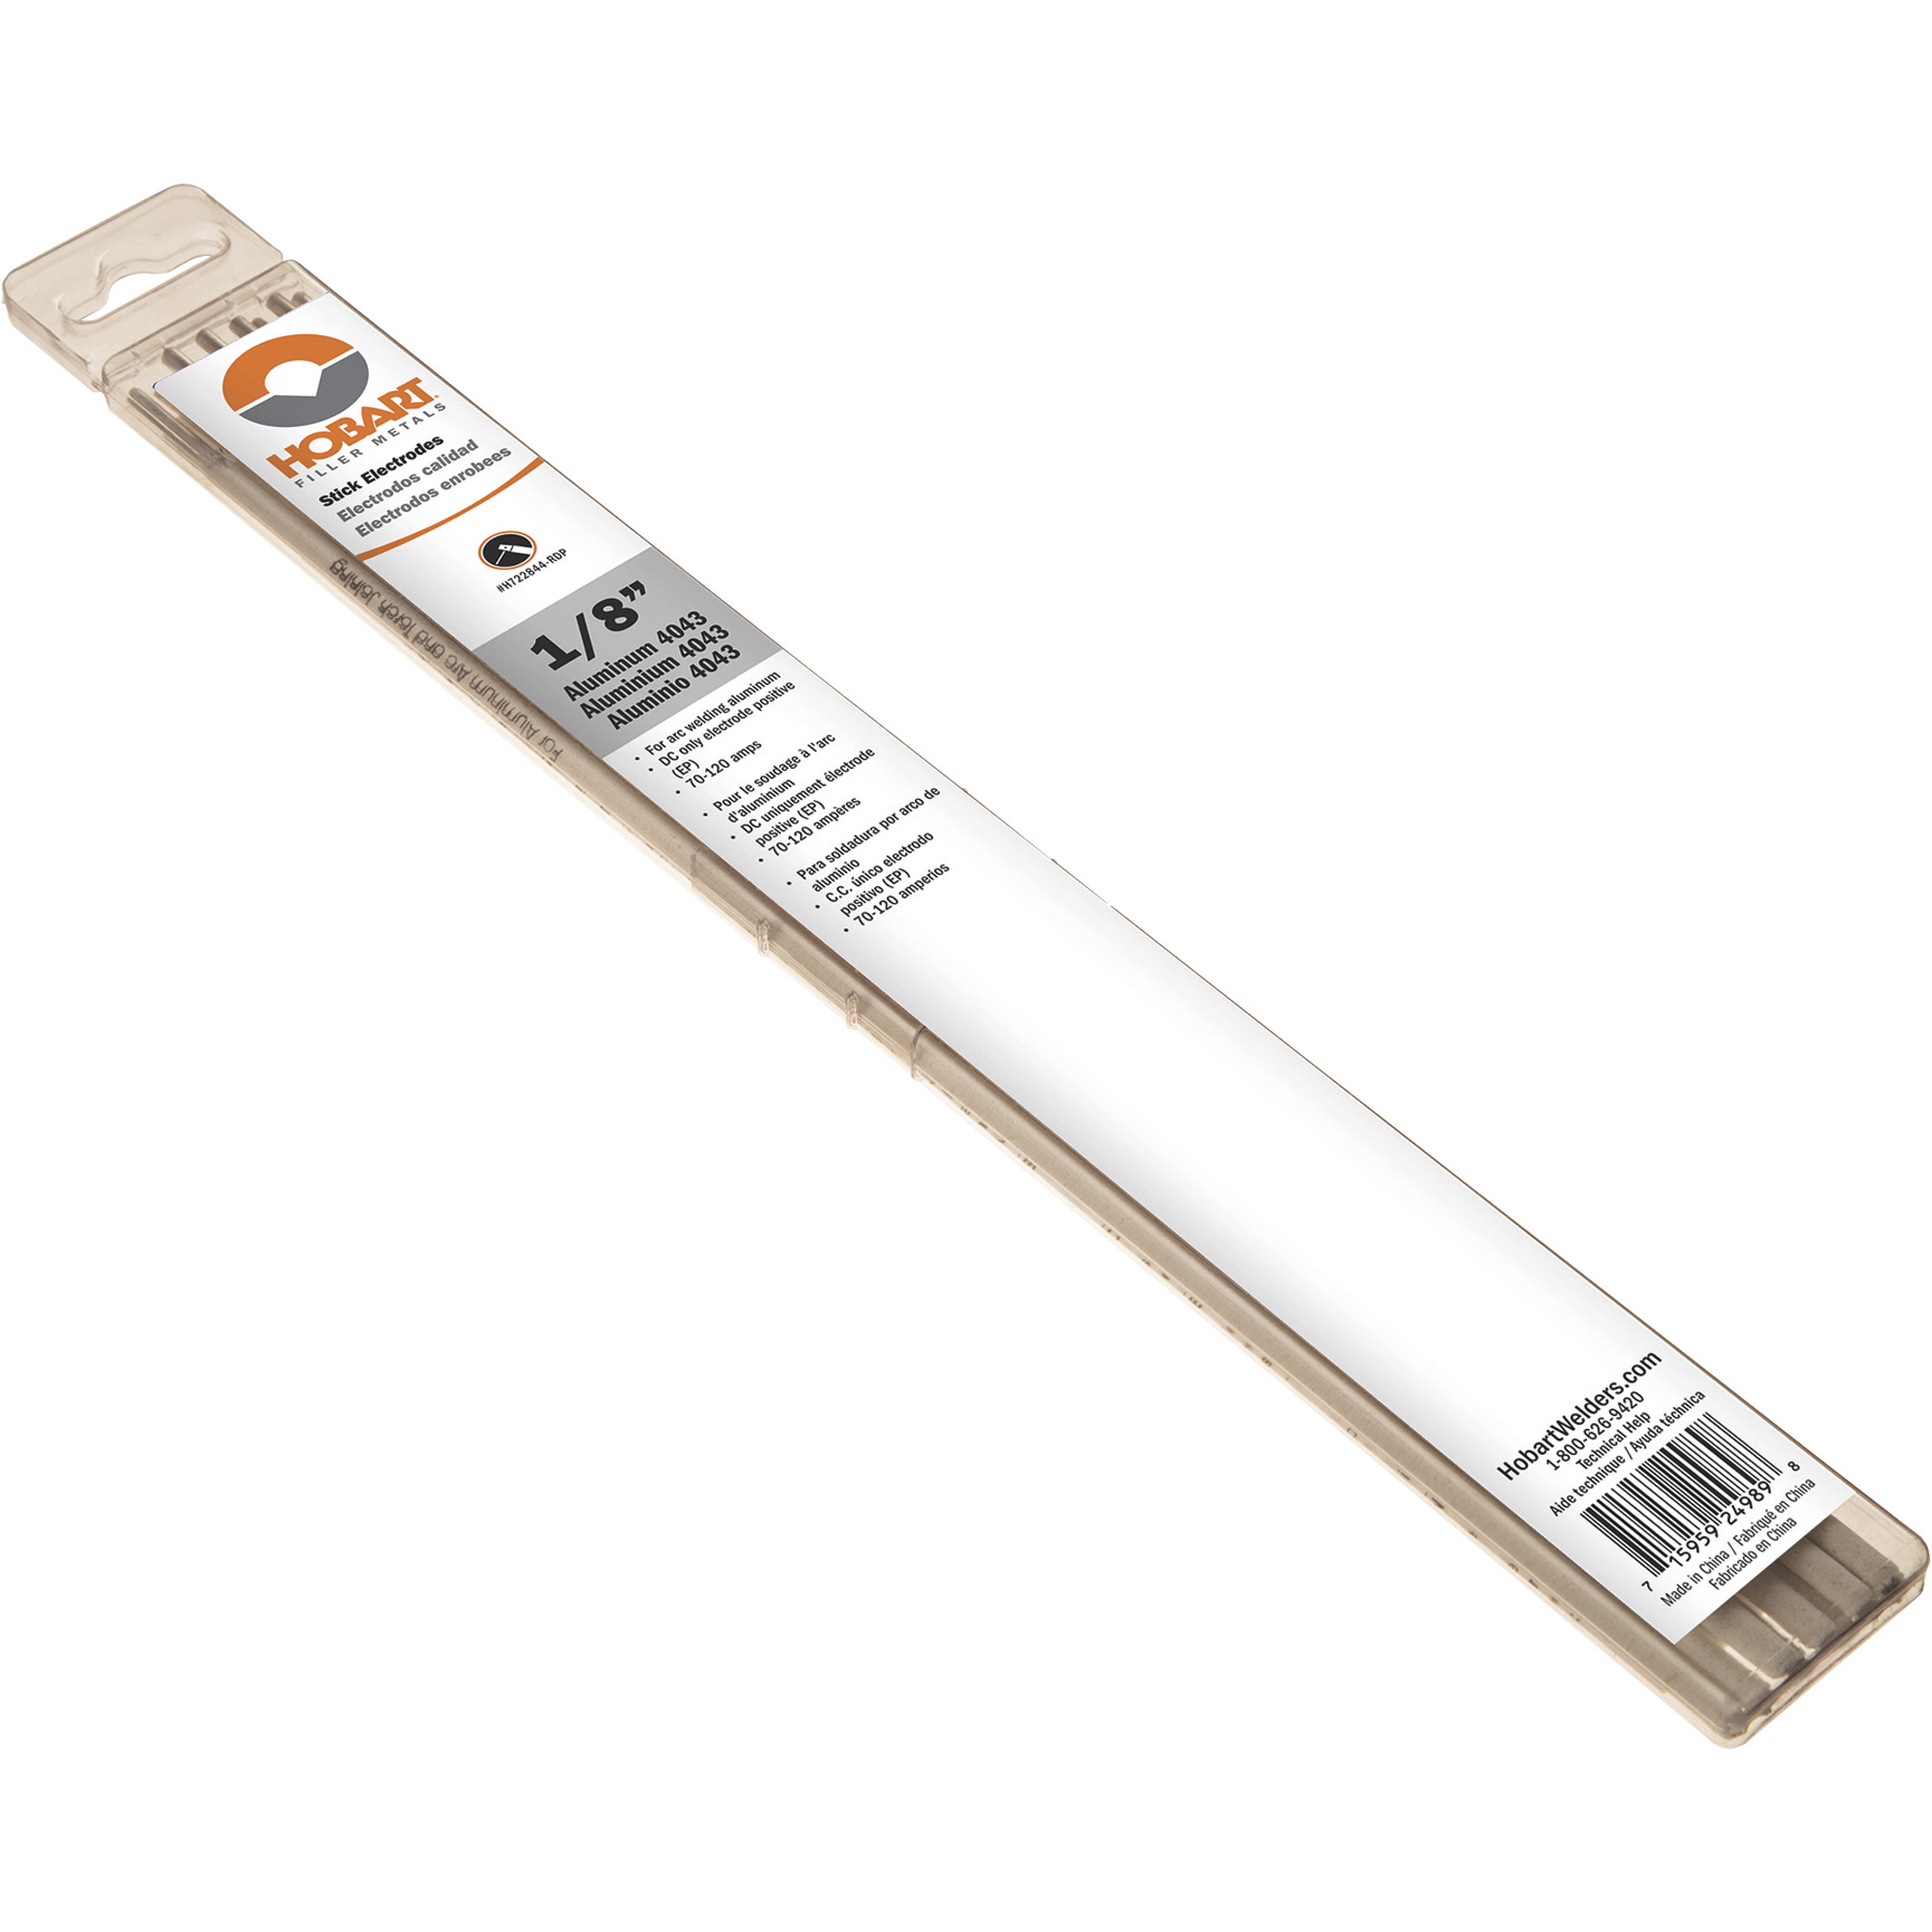 Hobart Filler Metals Stick Welding Electrodes â Aluminum 4043, 1/8Inch Diameter x 14Inch L, 10-Ct. Pkg., Model H722844-RDP